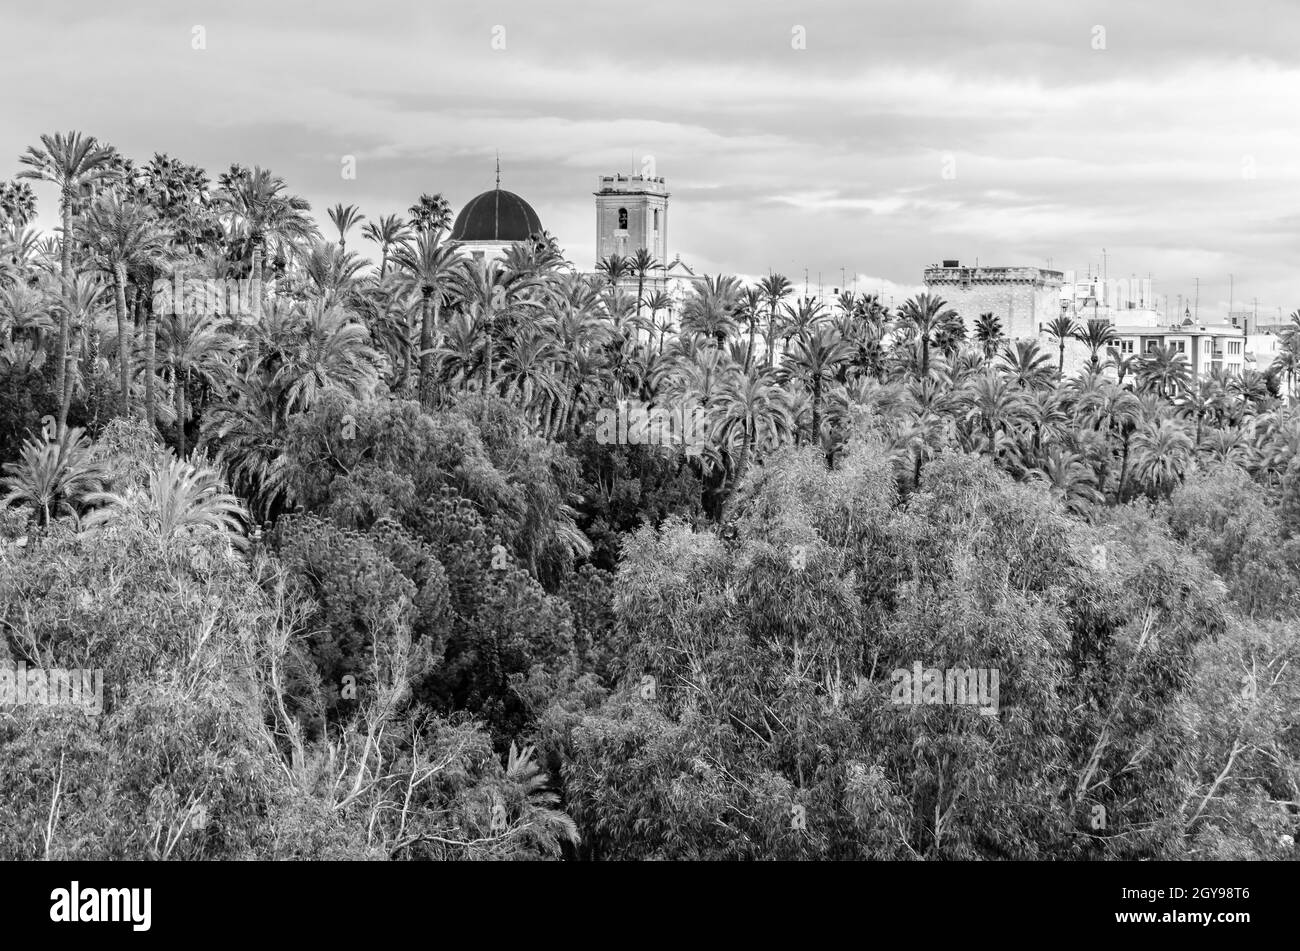 Vue sur la ville d'Elche, province d'Alicante, Espagne, montrant la palmeraie et la basilique; image en noir et blanc Banque D'Images